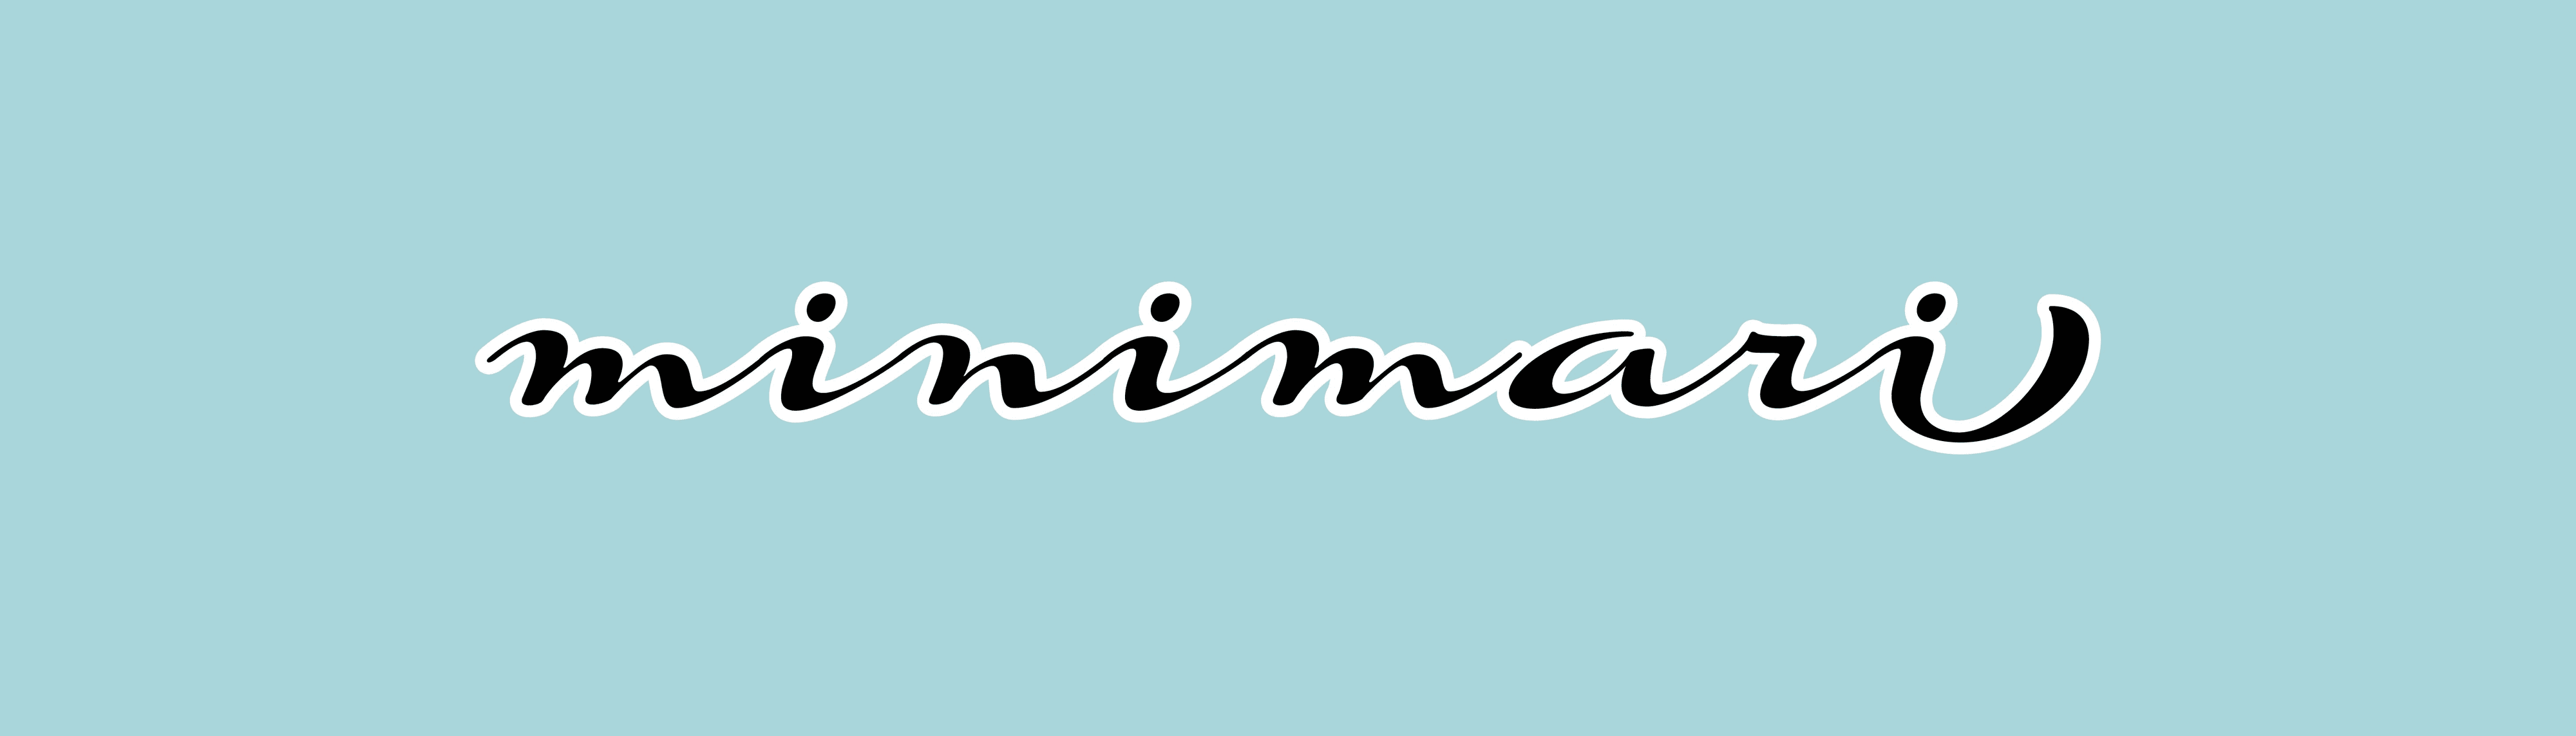 minimari banner